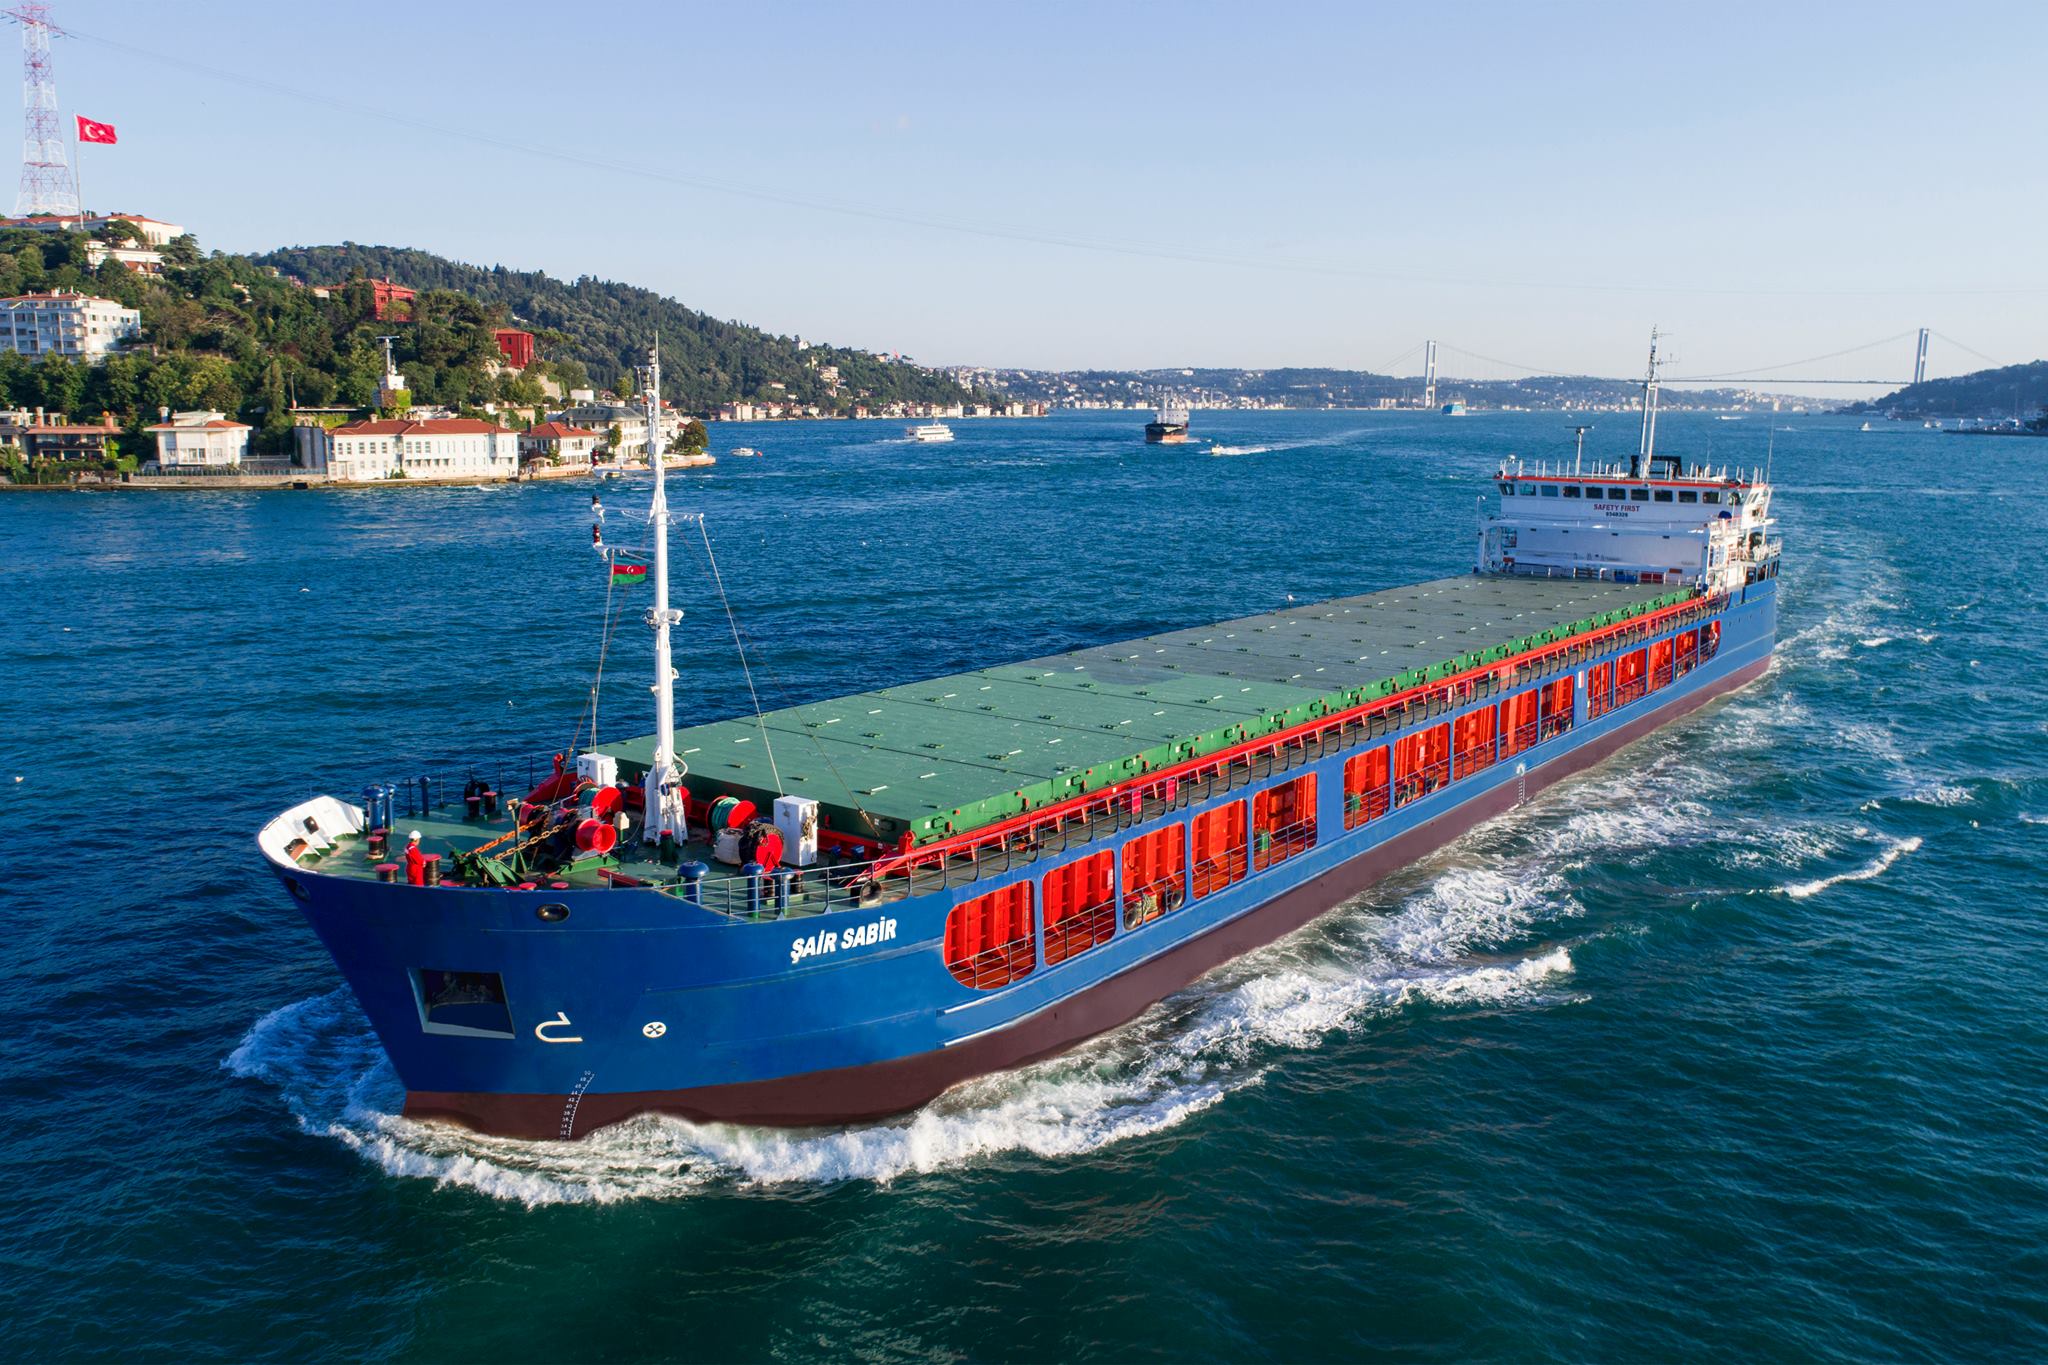 “Şair Sabir” gəmisi yenidən xarici sulara yola salındı | KONKRET